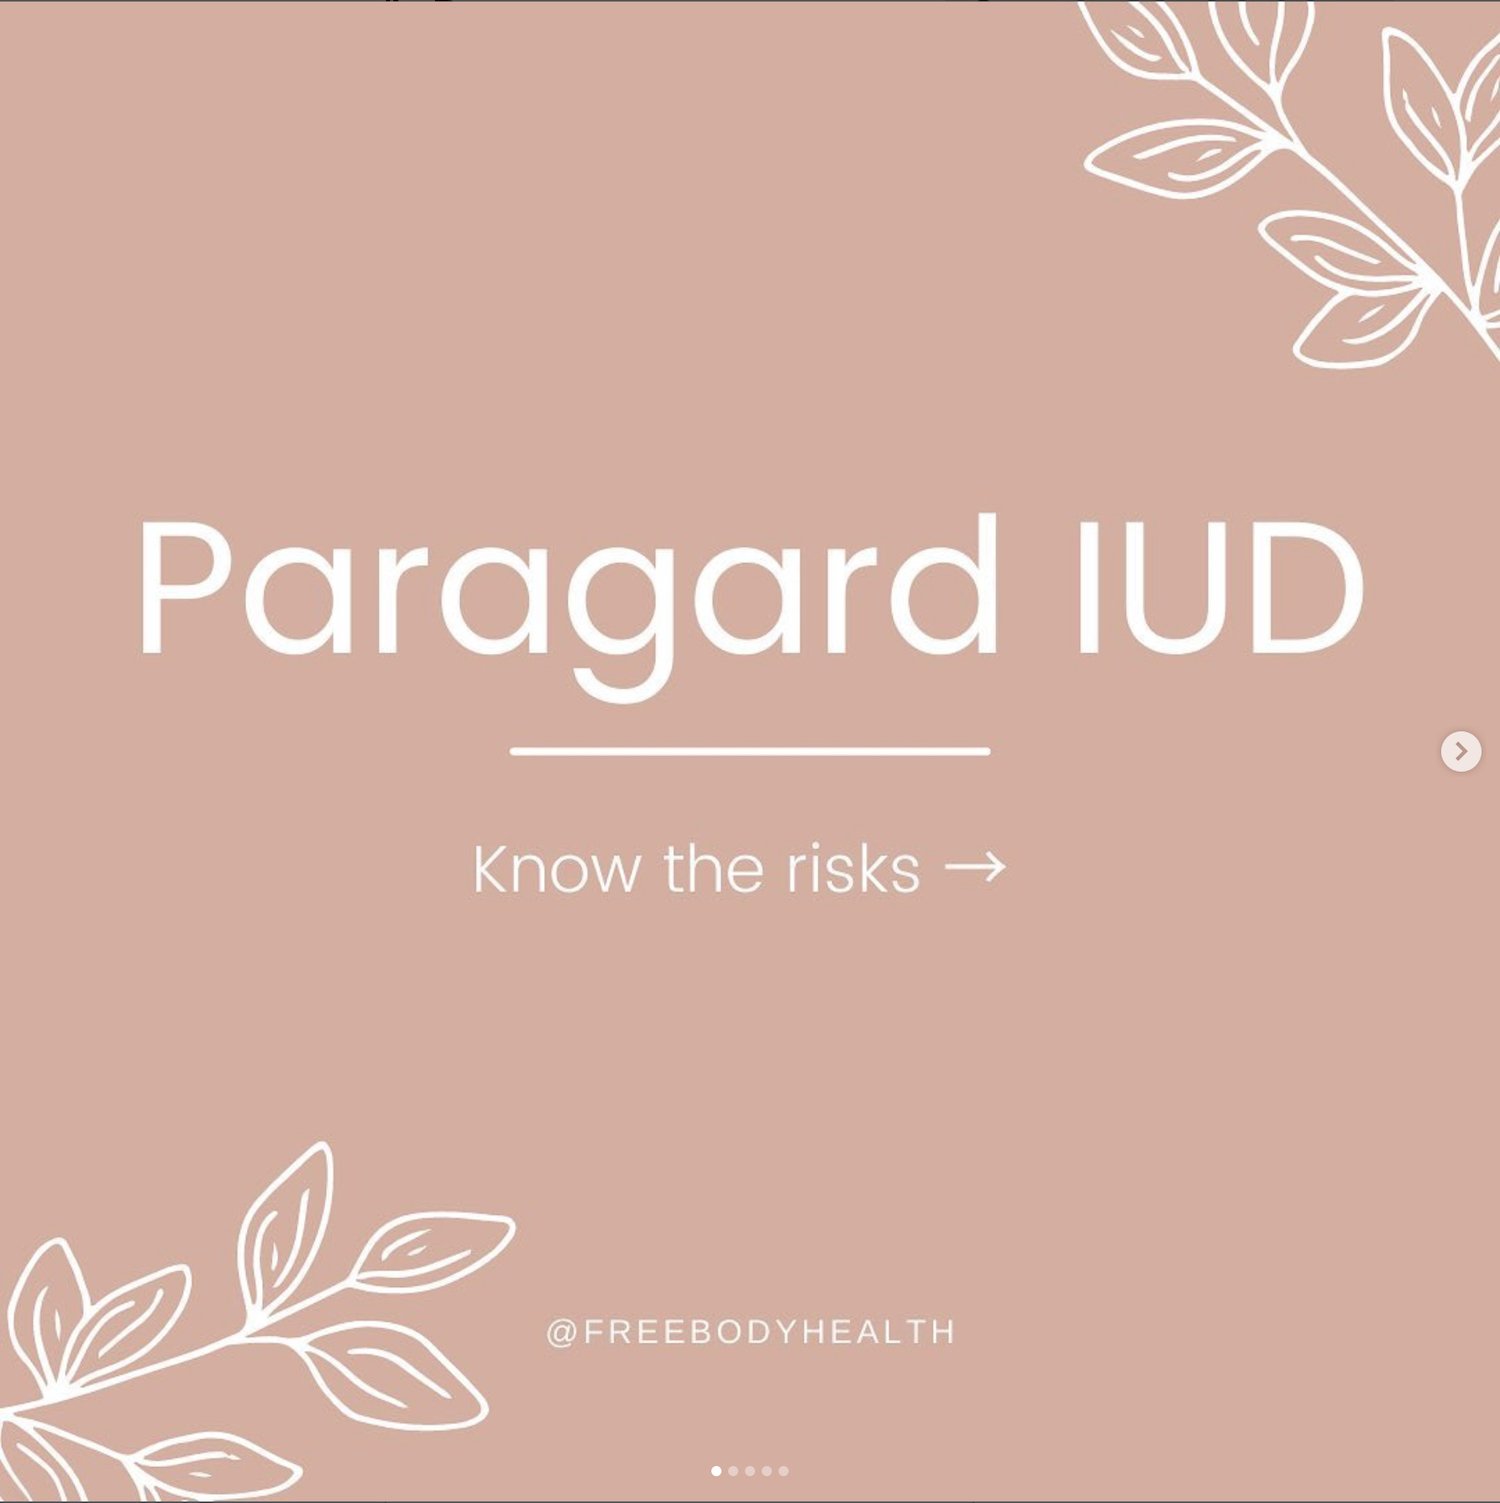 Paragard IUD Story page 1